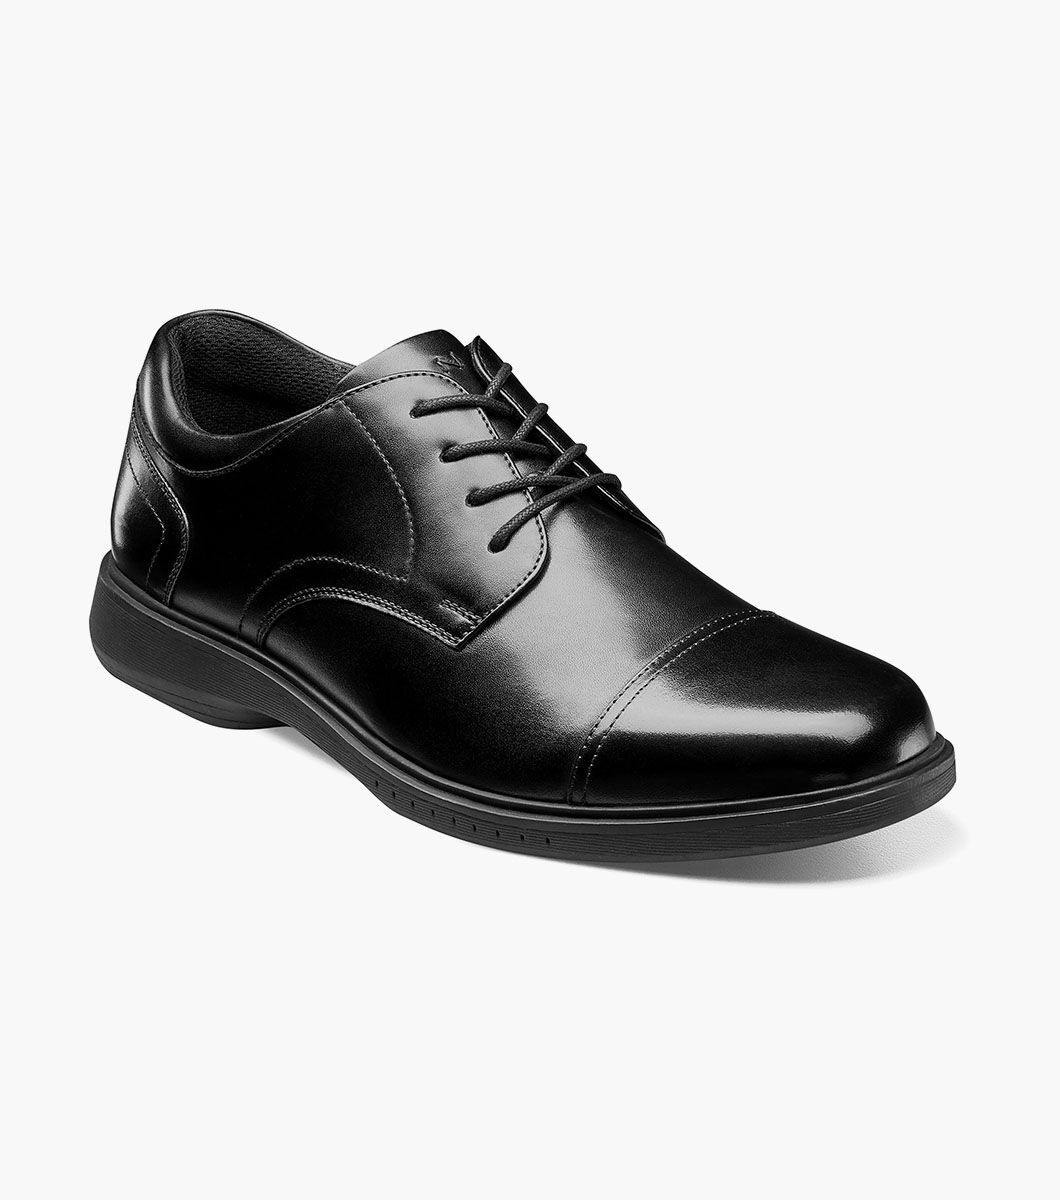 Nunn Bush Shoes KORE Pro Cap Toe Oxford Black Size 10.5